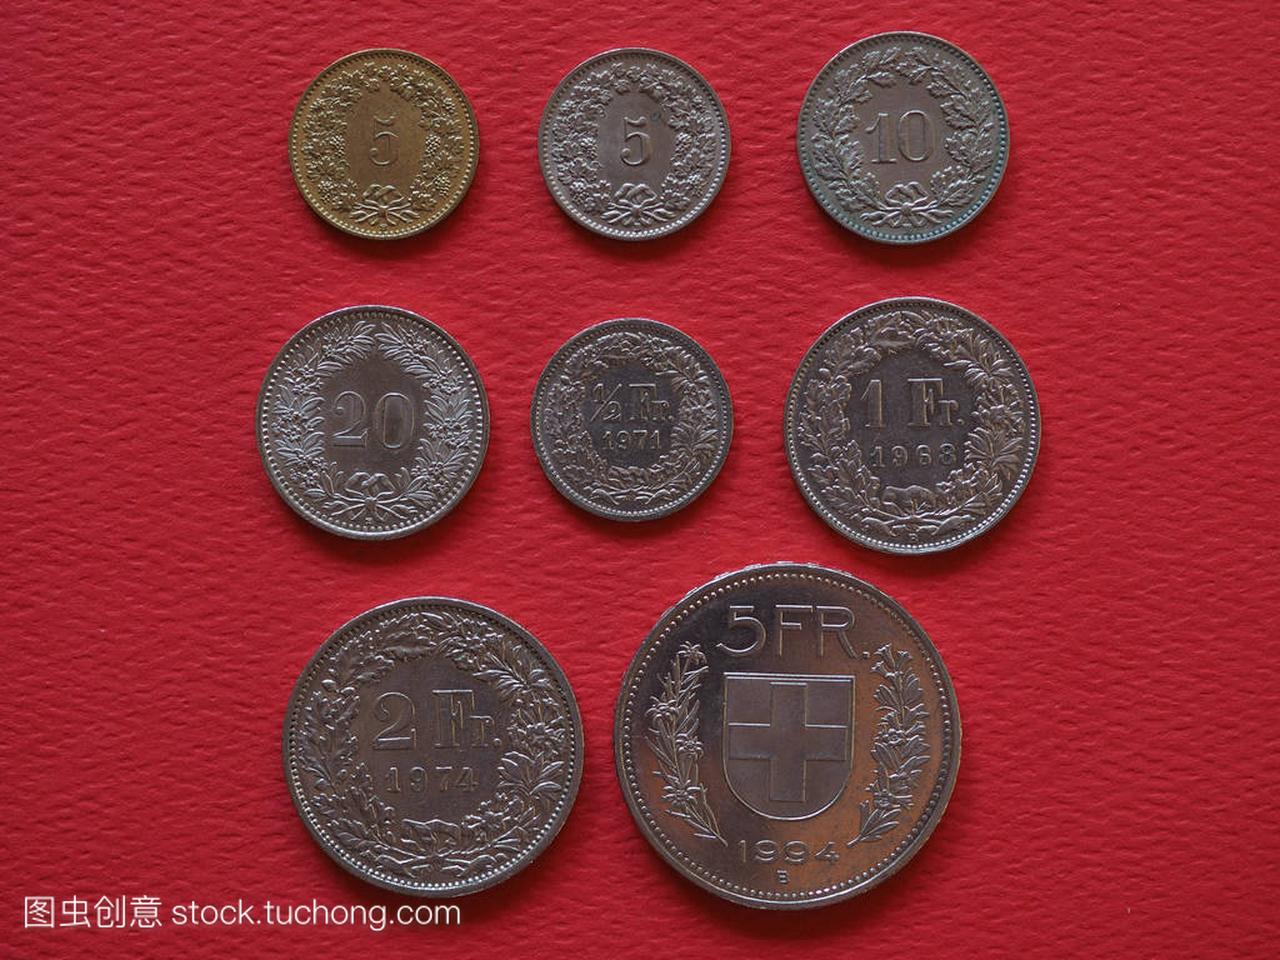 瑞士瑞士法郎硬币